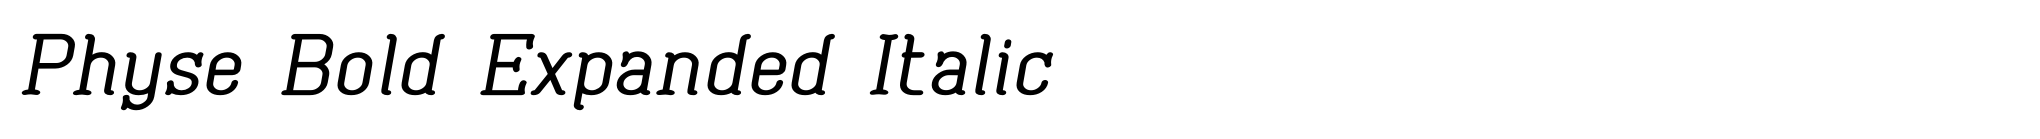 Physe Bold Expanded Italic image